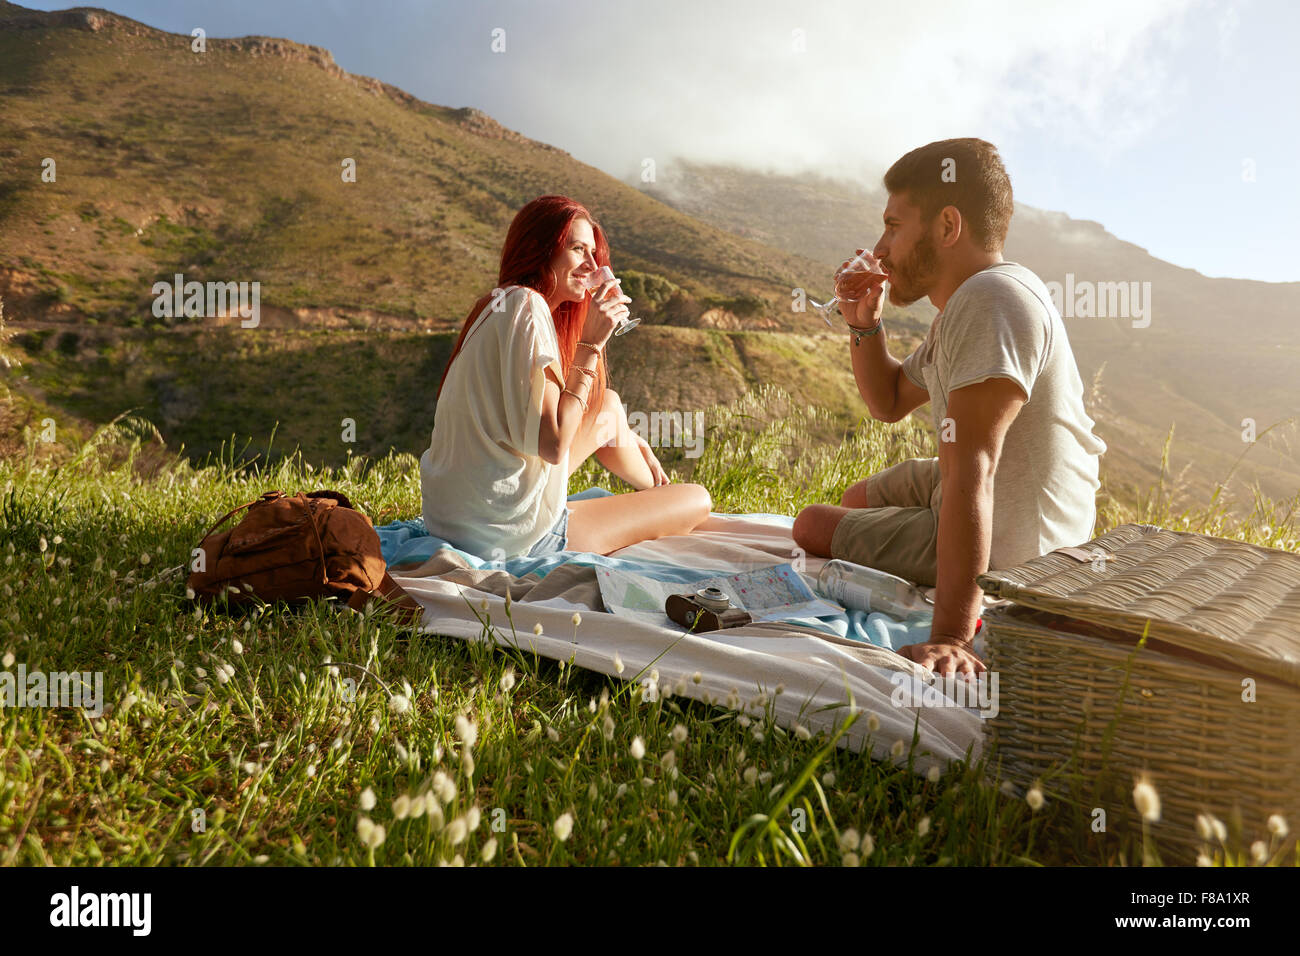 Im Freien Schuss eines jungen Paares, Wein zu trinken. Entspannter Mann und Frau in den Sommerferien in Landschaft. Stockfoto